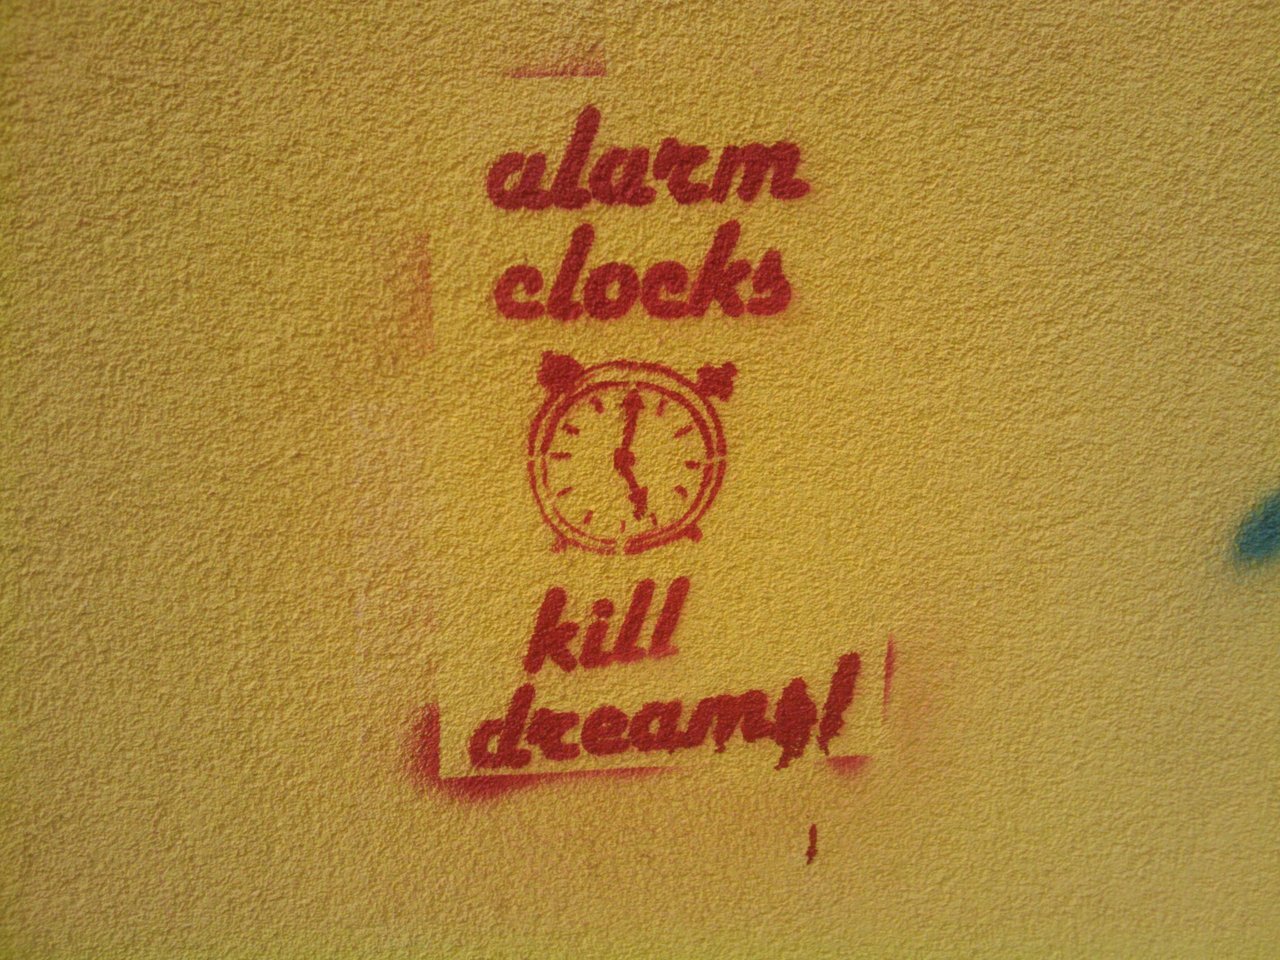 alarm_clocks_kill_dreams.jpg